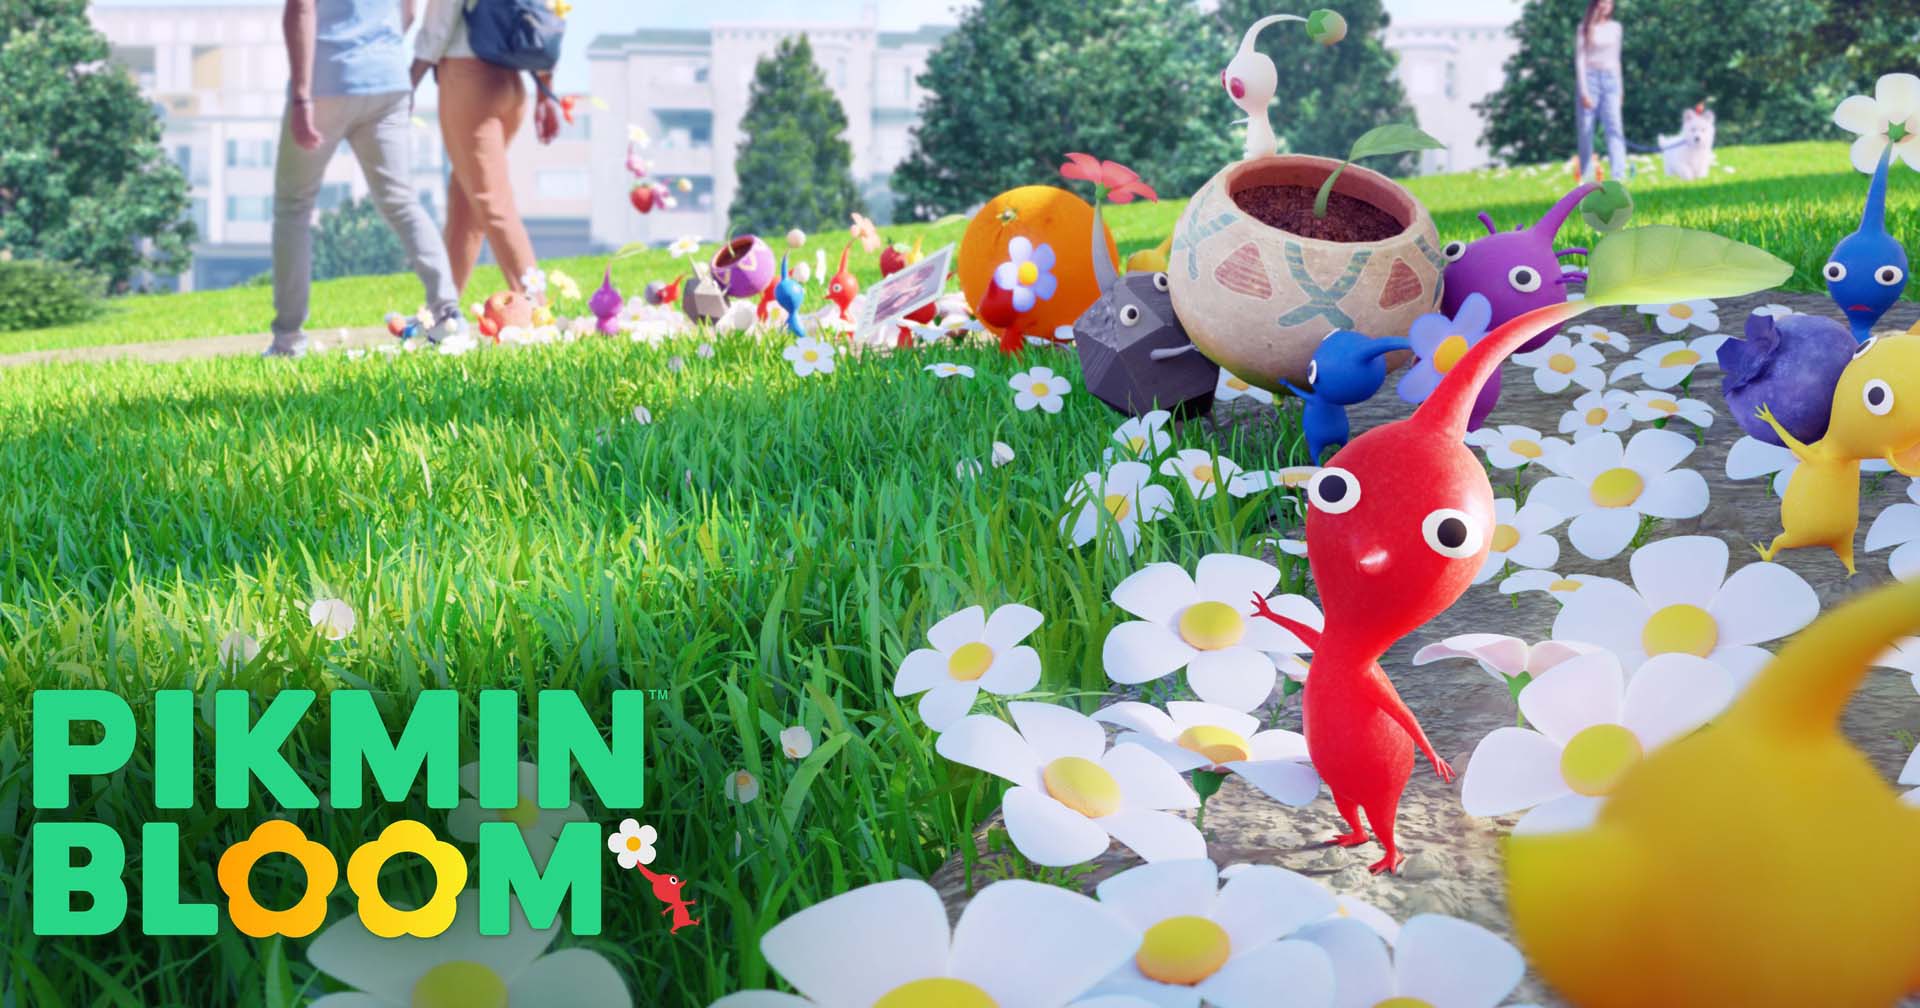 [รีวิวเกม] Pikmin Bloom เกม AR นับก้าวปลูกดอกไม้ สะสมตัวละครสุดน่ารัก พร้อมคำแนะนำการเล่น